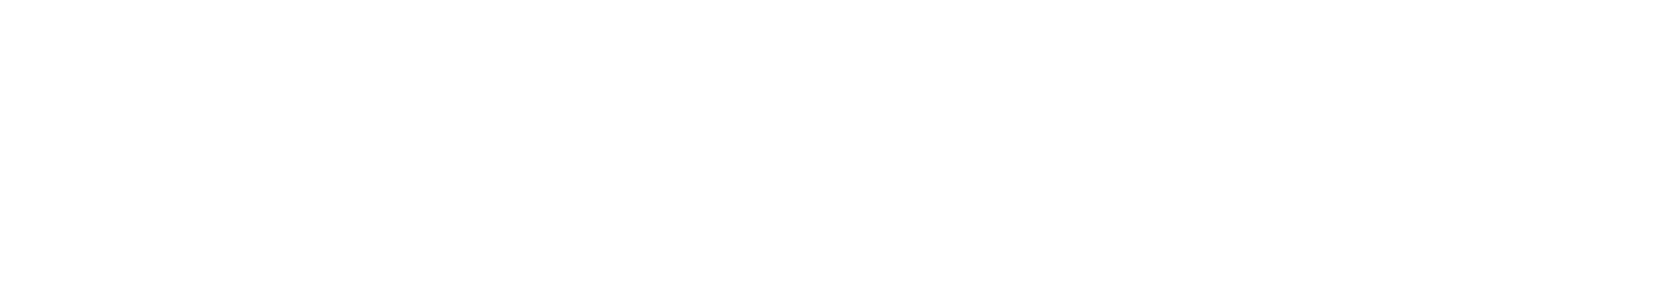 Glencore Logo groß für dunkle Hintergründe (transparentes PNG)